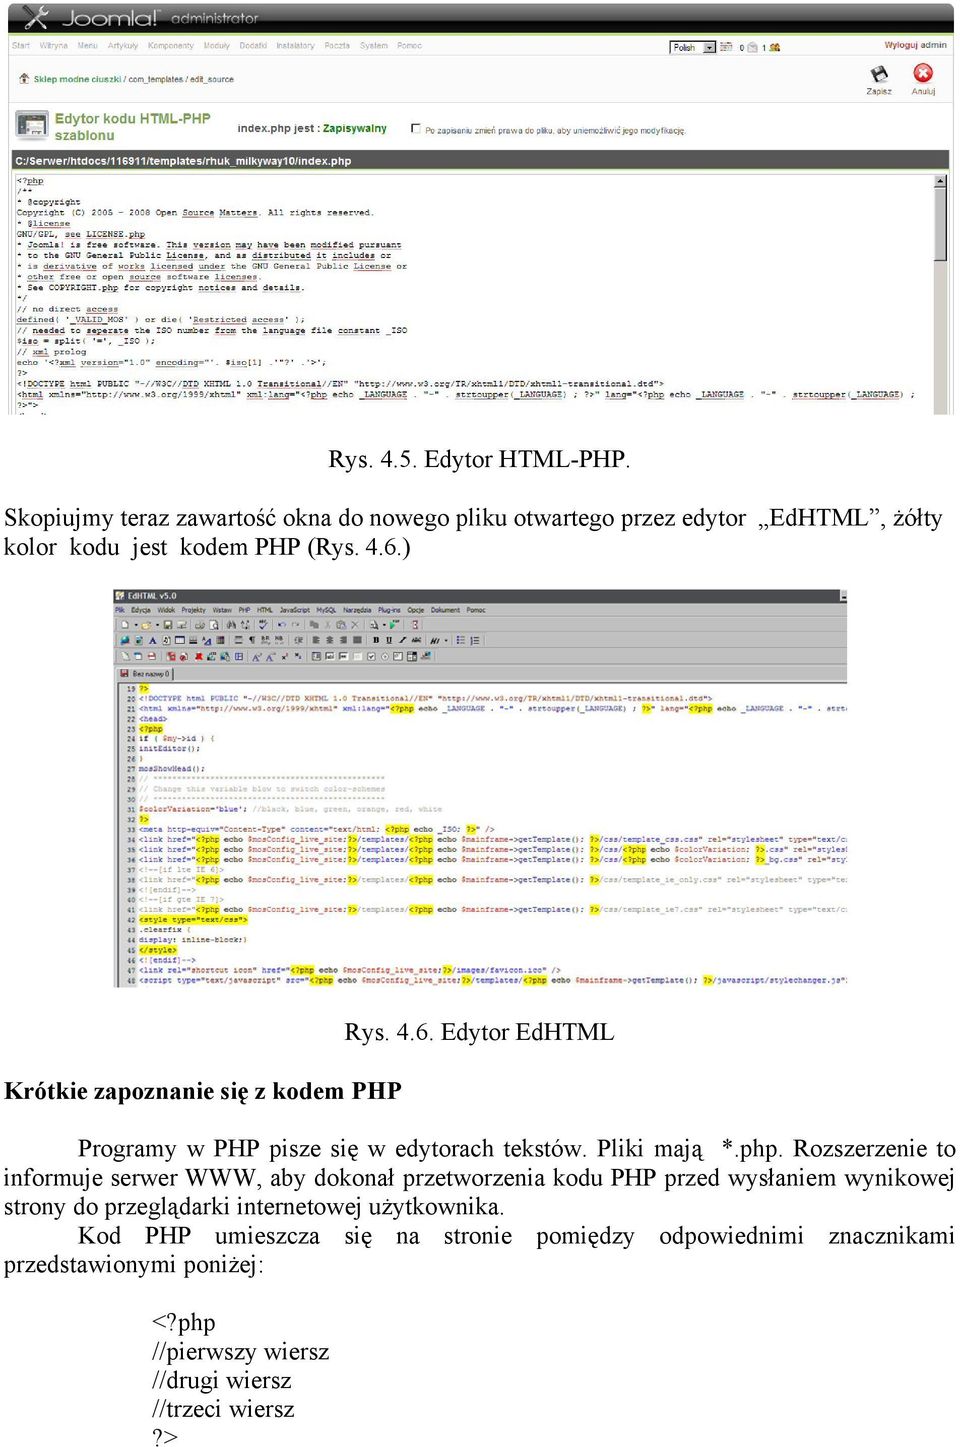 Rozszerzenie to informuje serwer WWW, aby dokonał przetworzenia kodu PHP przed wysłaniem wynikowej strony do przeglądarki internetowej